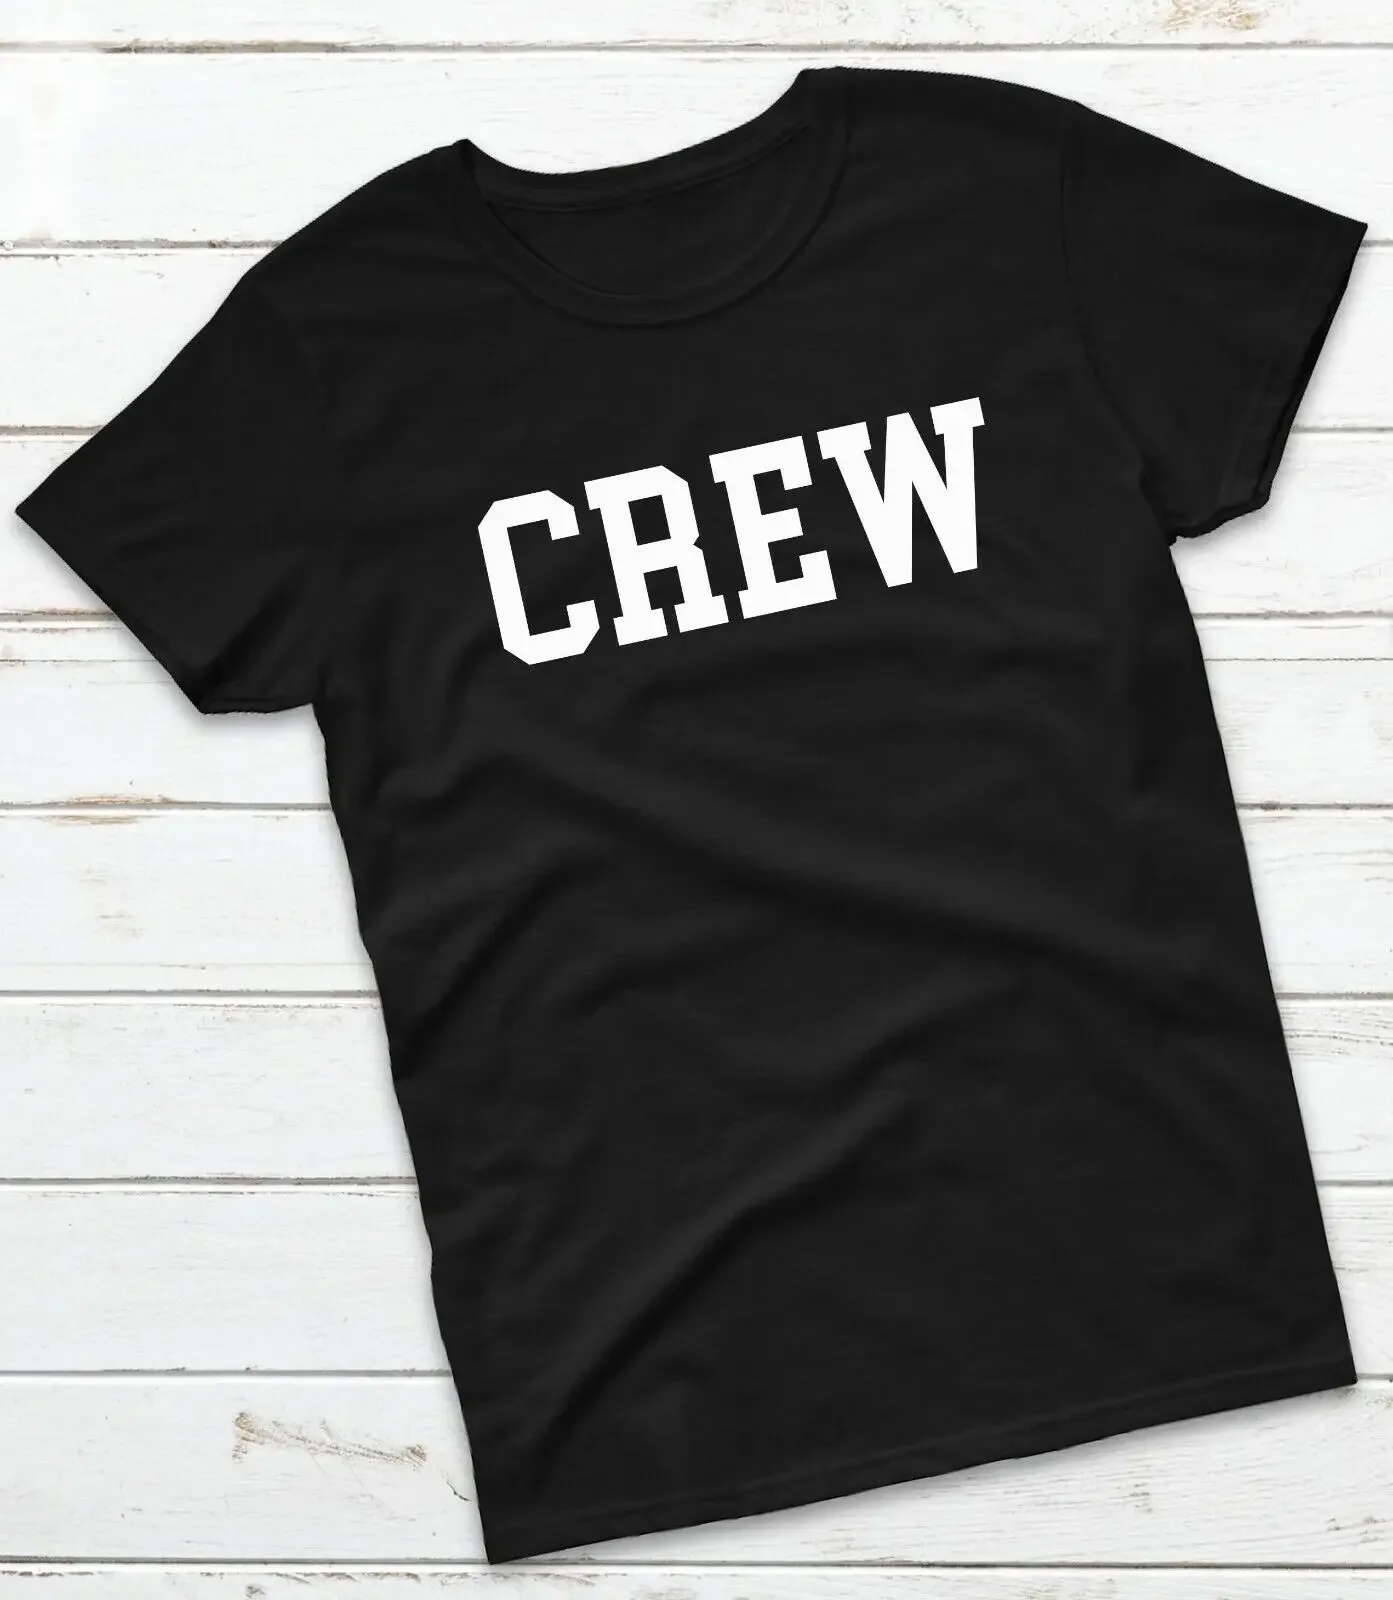 

Crew T-shirt - Stage Staff Management Roadies Sound Workwear Uniform Top Tee